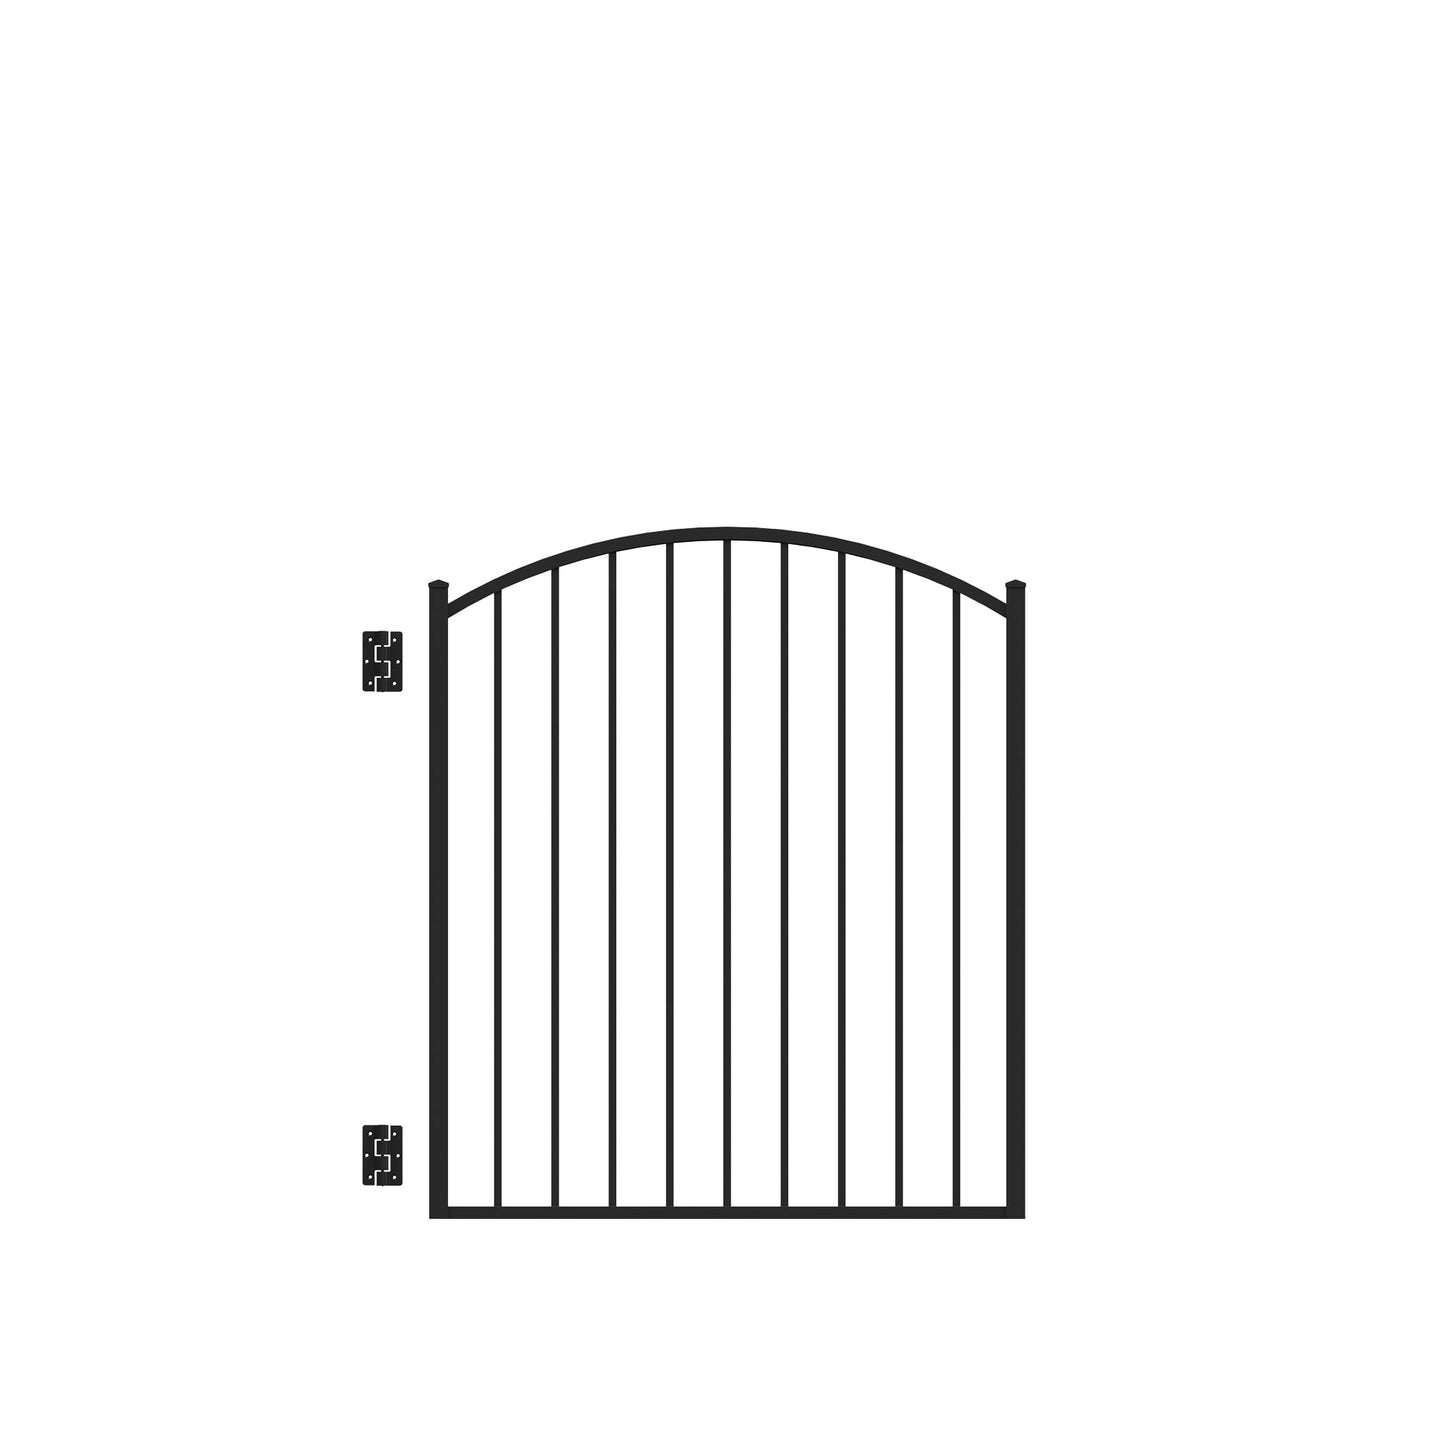 Bedrock Harbor Series - Arched Gate - 4' x 3'-Aluminum Fence Gates-ActiveYards-Black-FenceCenter